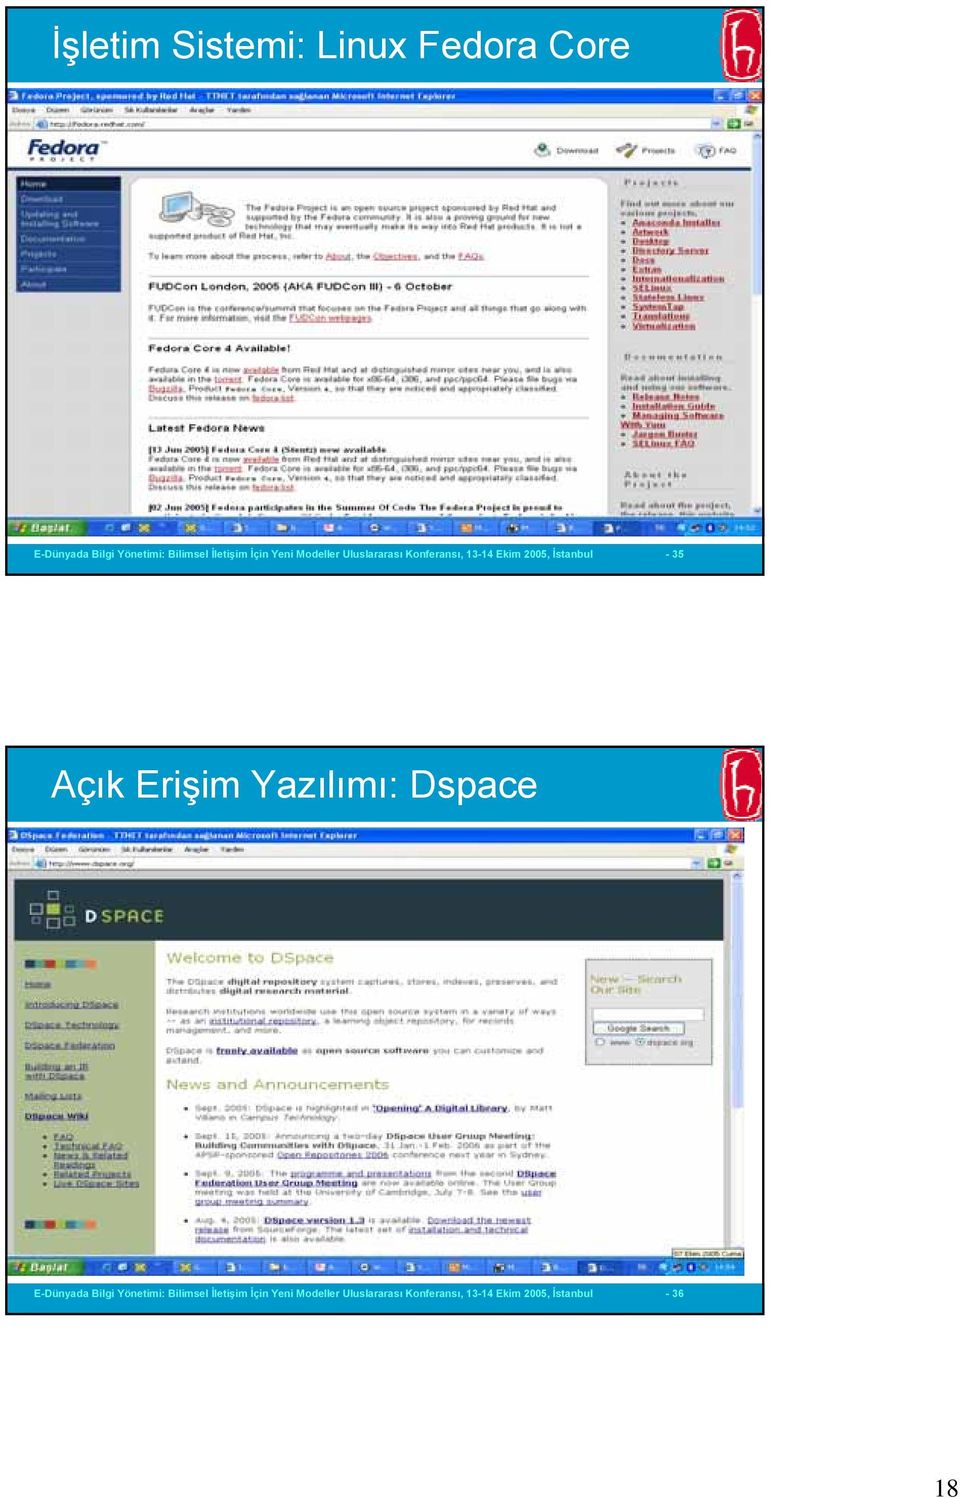 İstanbul - 35 Açık Erişim Yazılımı: Dspace E-Dünyada Bilgi Yönetimi: